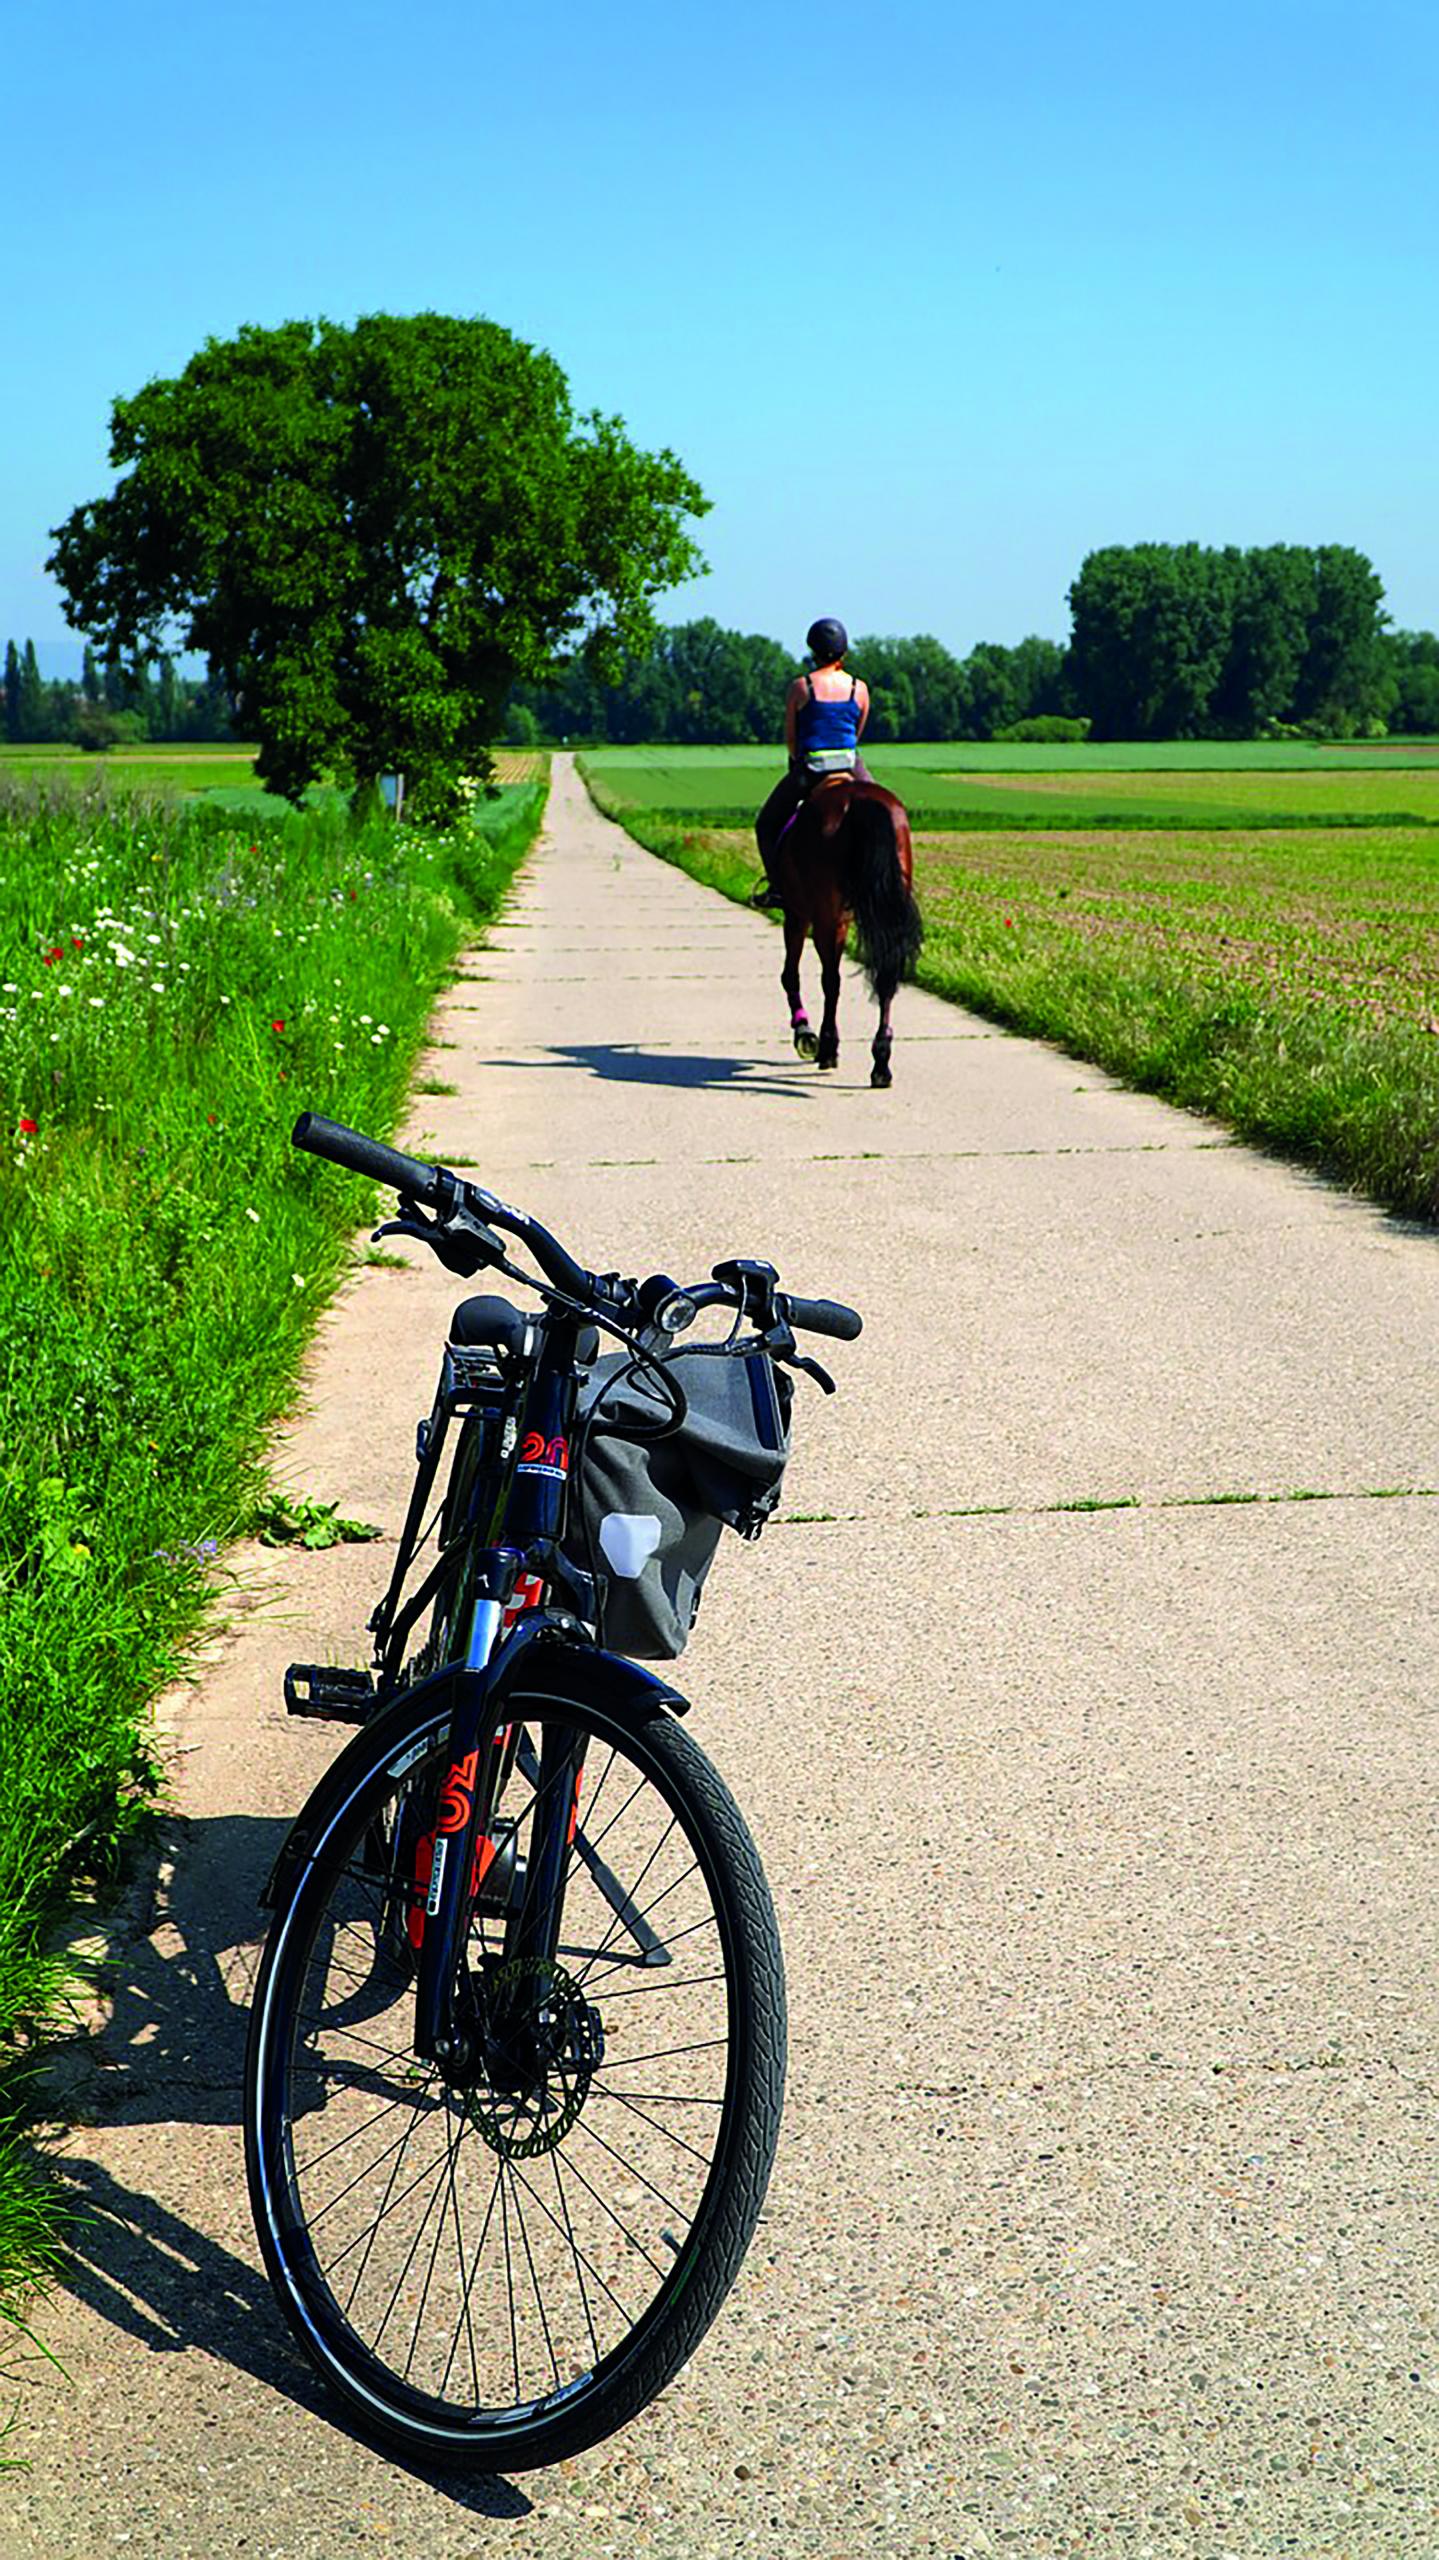 Ein Fahrrad steht auf dem Feldweg. Im Hintergrund ist eine Reiterin zu sehen.